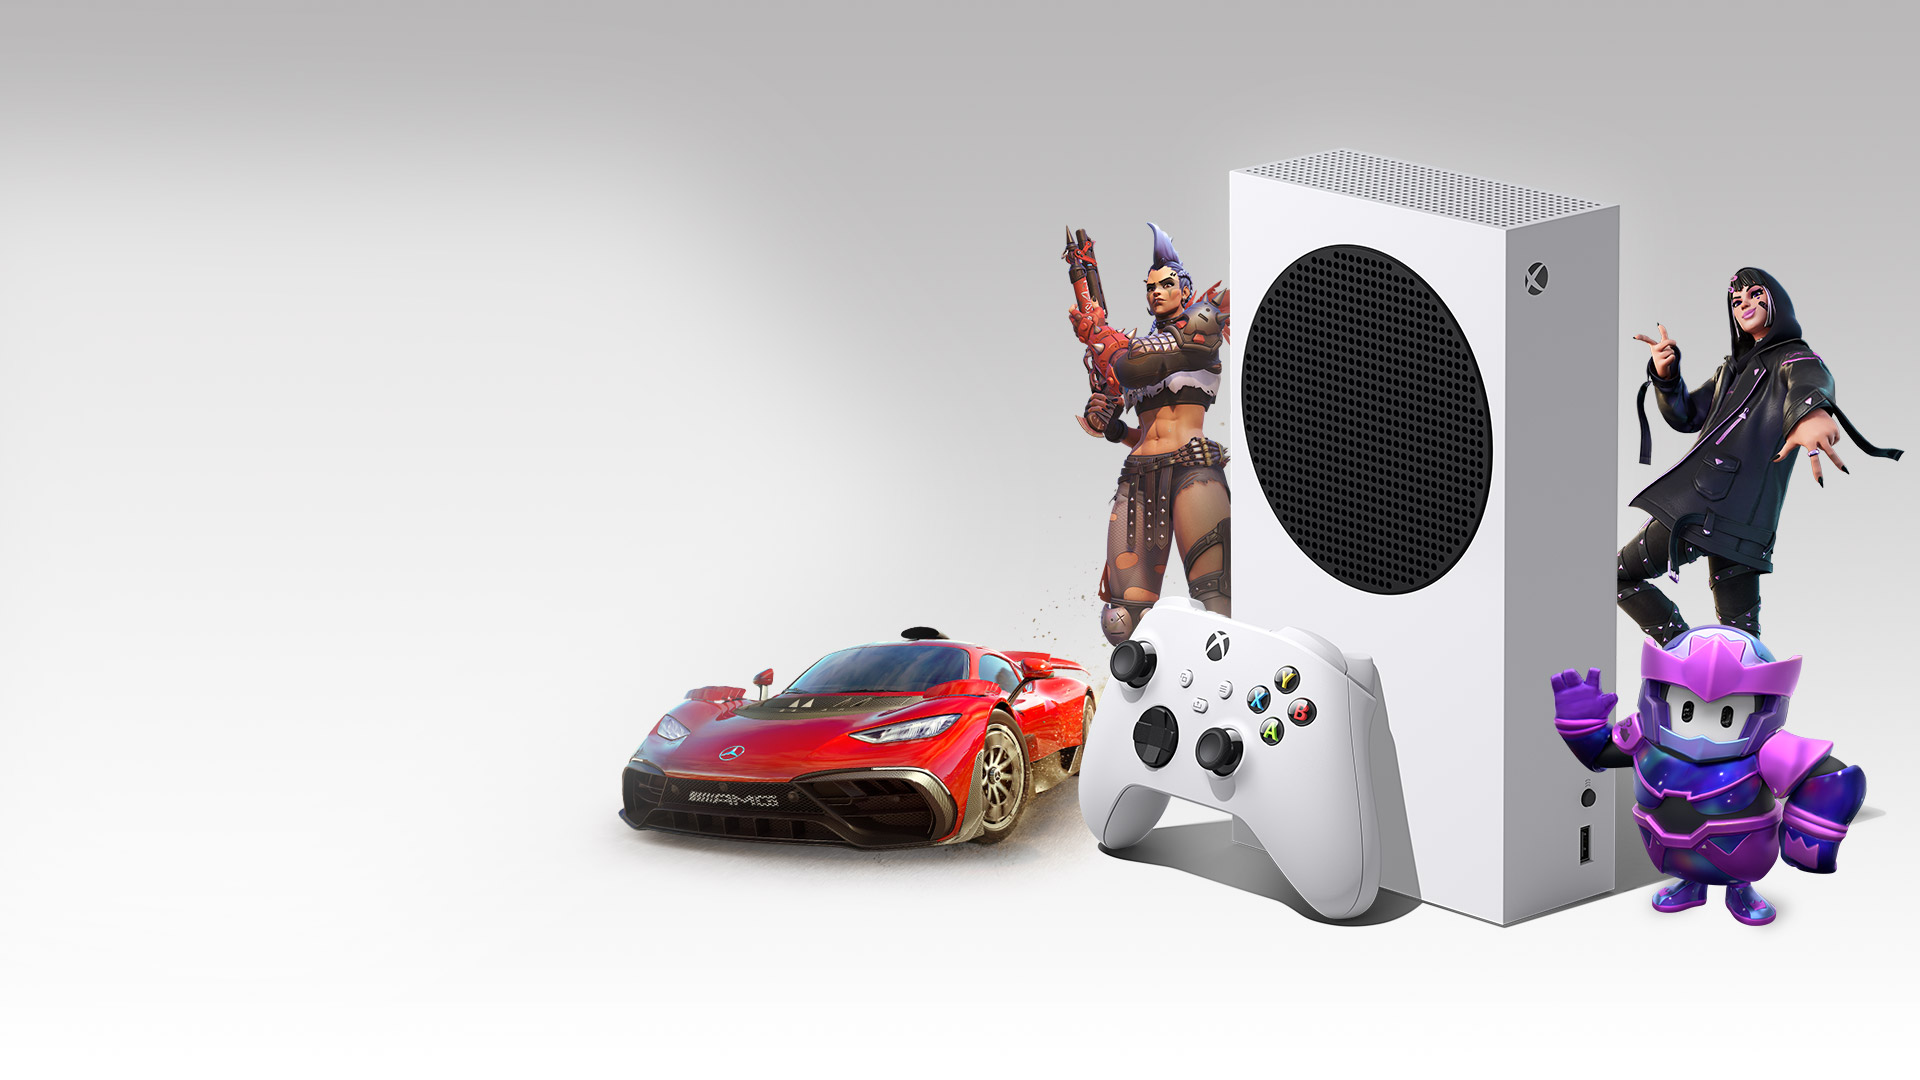 Une Xbox Series S entourée de personnages de Overwatch 2, Fortnite, Fall Guys et la Mercedes-AMG One de Forza Horizon 5.